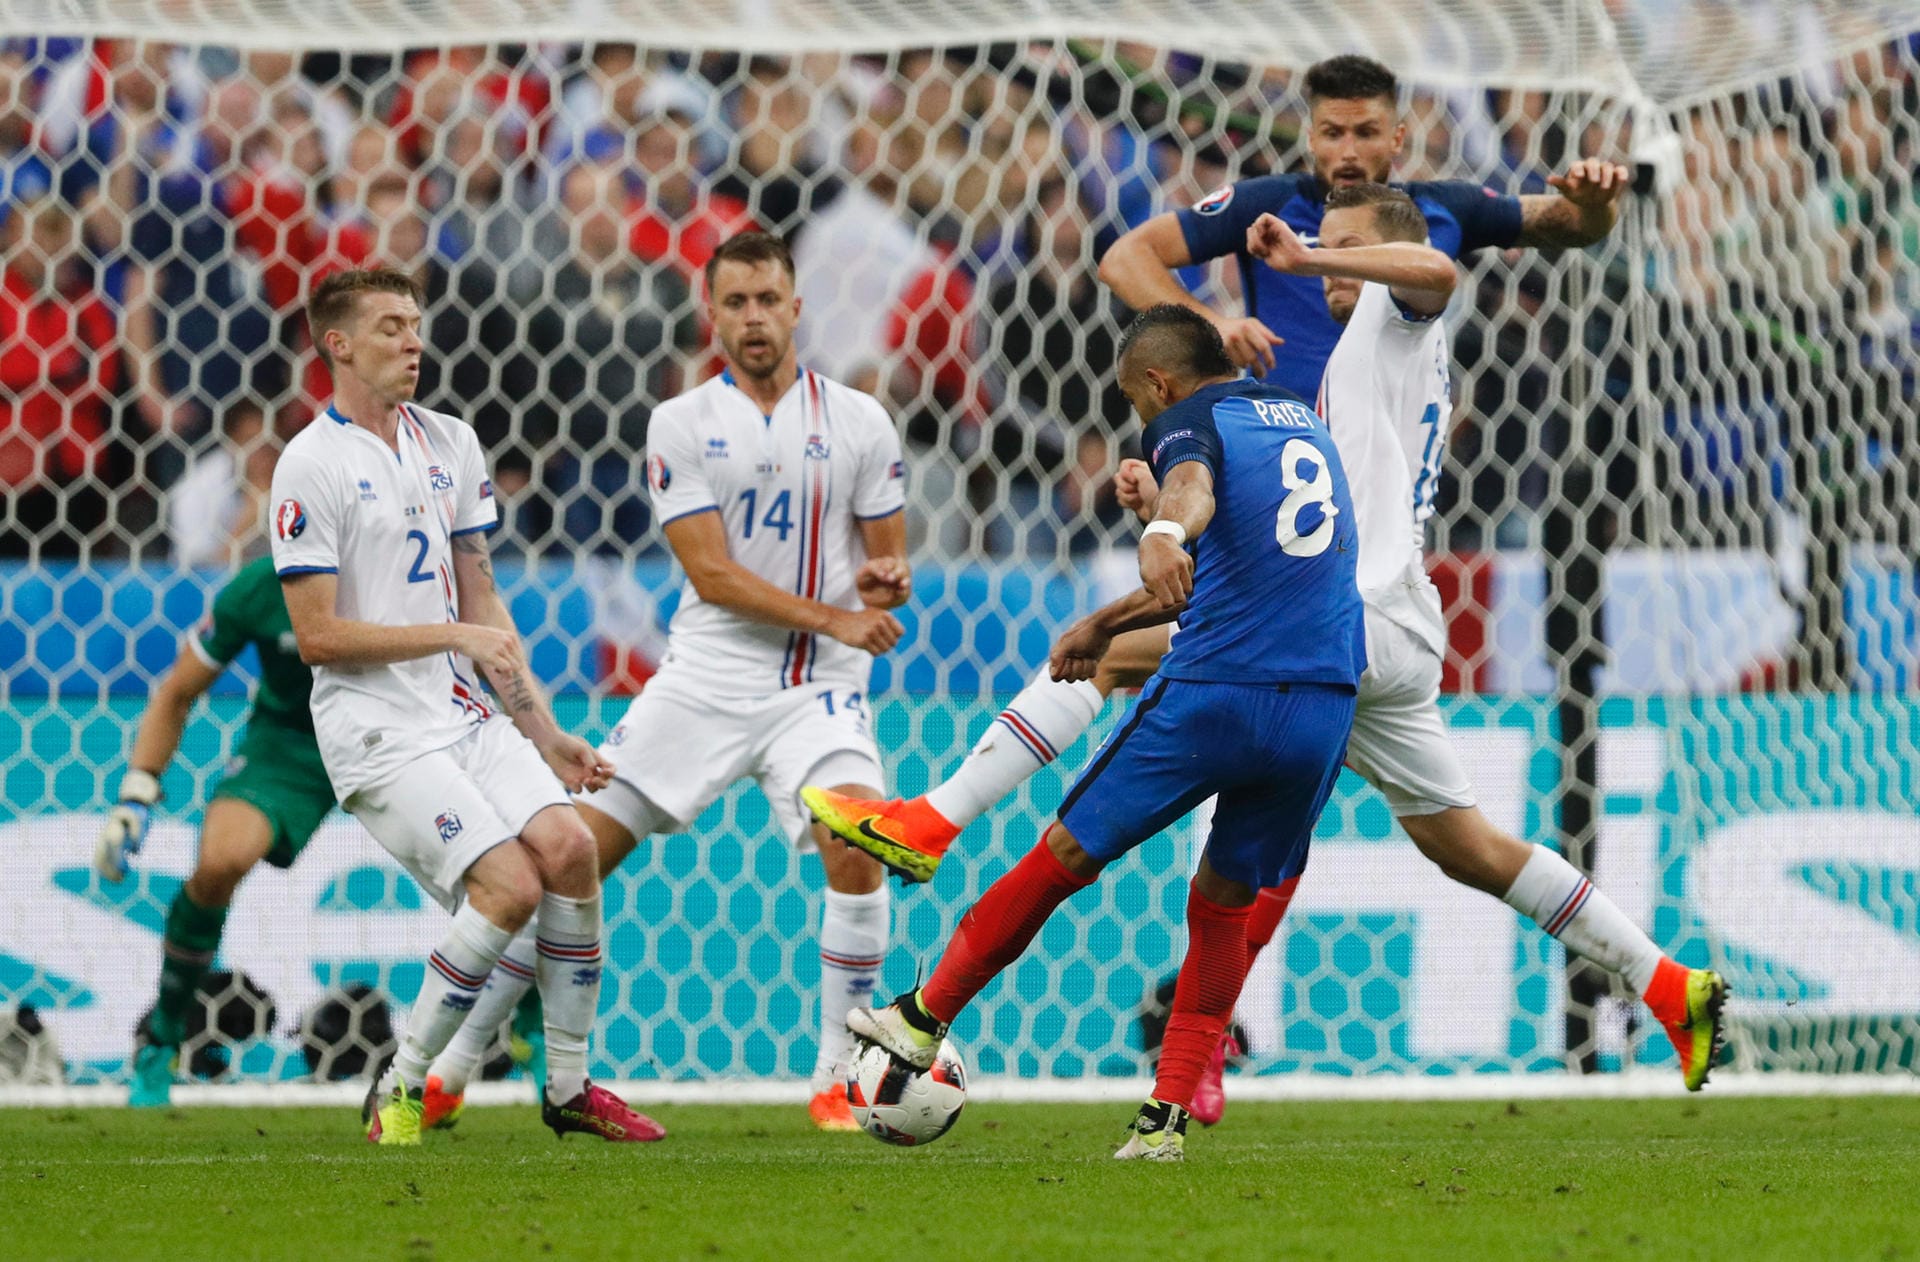 Doch der Bann scheint gebrochen: Frankreich dreht kurz vor der Halbzeit weiter auf, Dimitri Payet trifft in der 43. Minute per sattem Linksschuss zum 3:0! Das Aus der Isländer scheint nur noch Formsache.